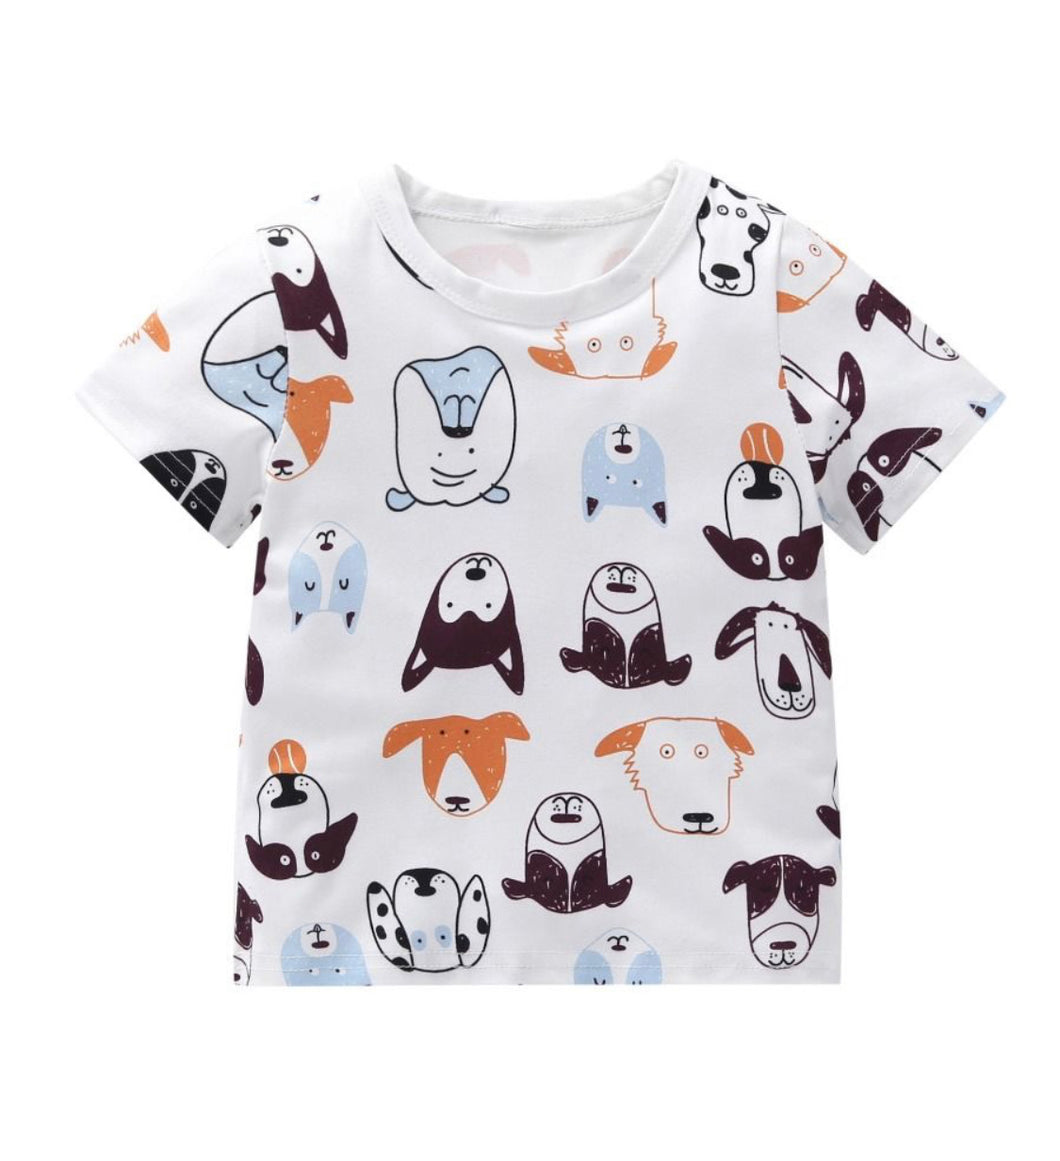 Dog pattern T-shirt